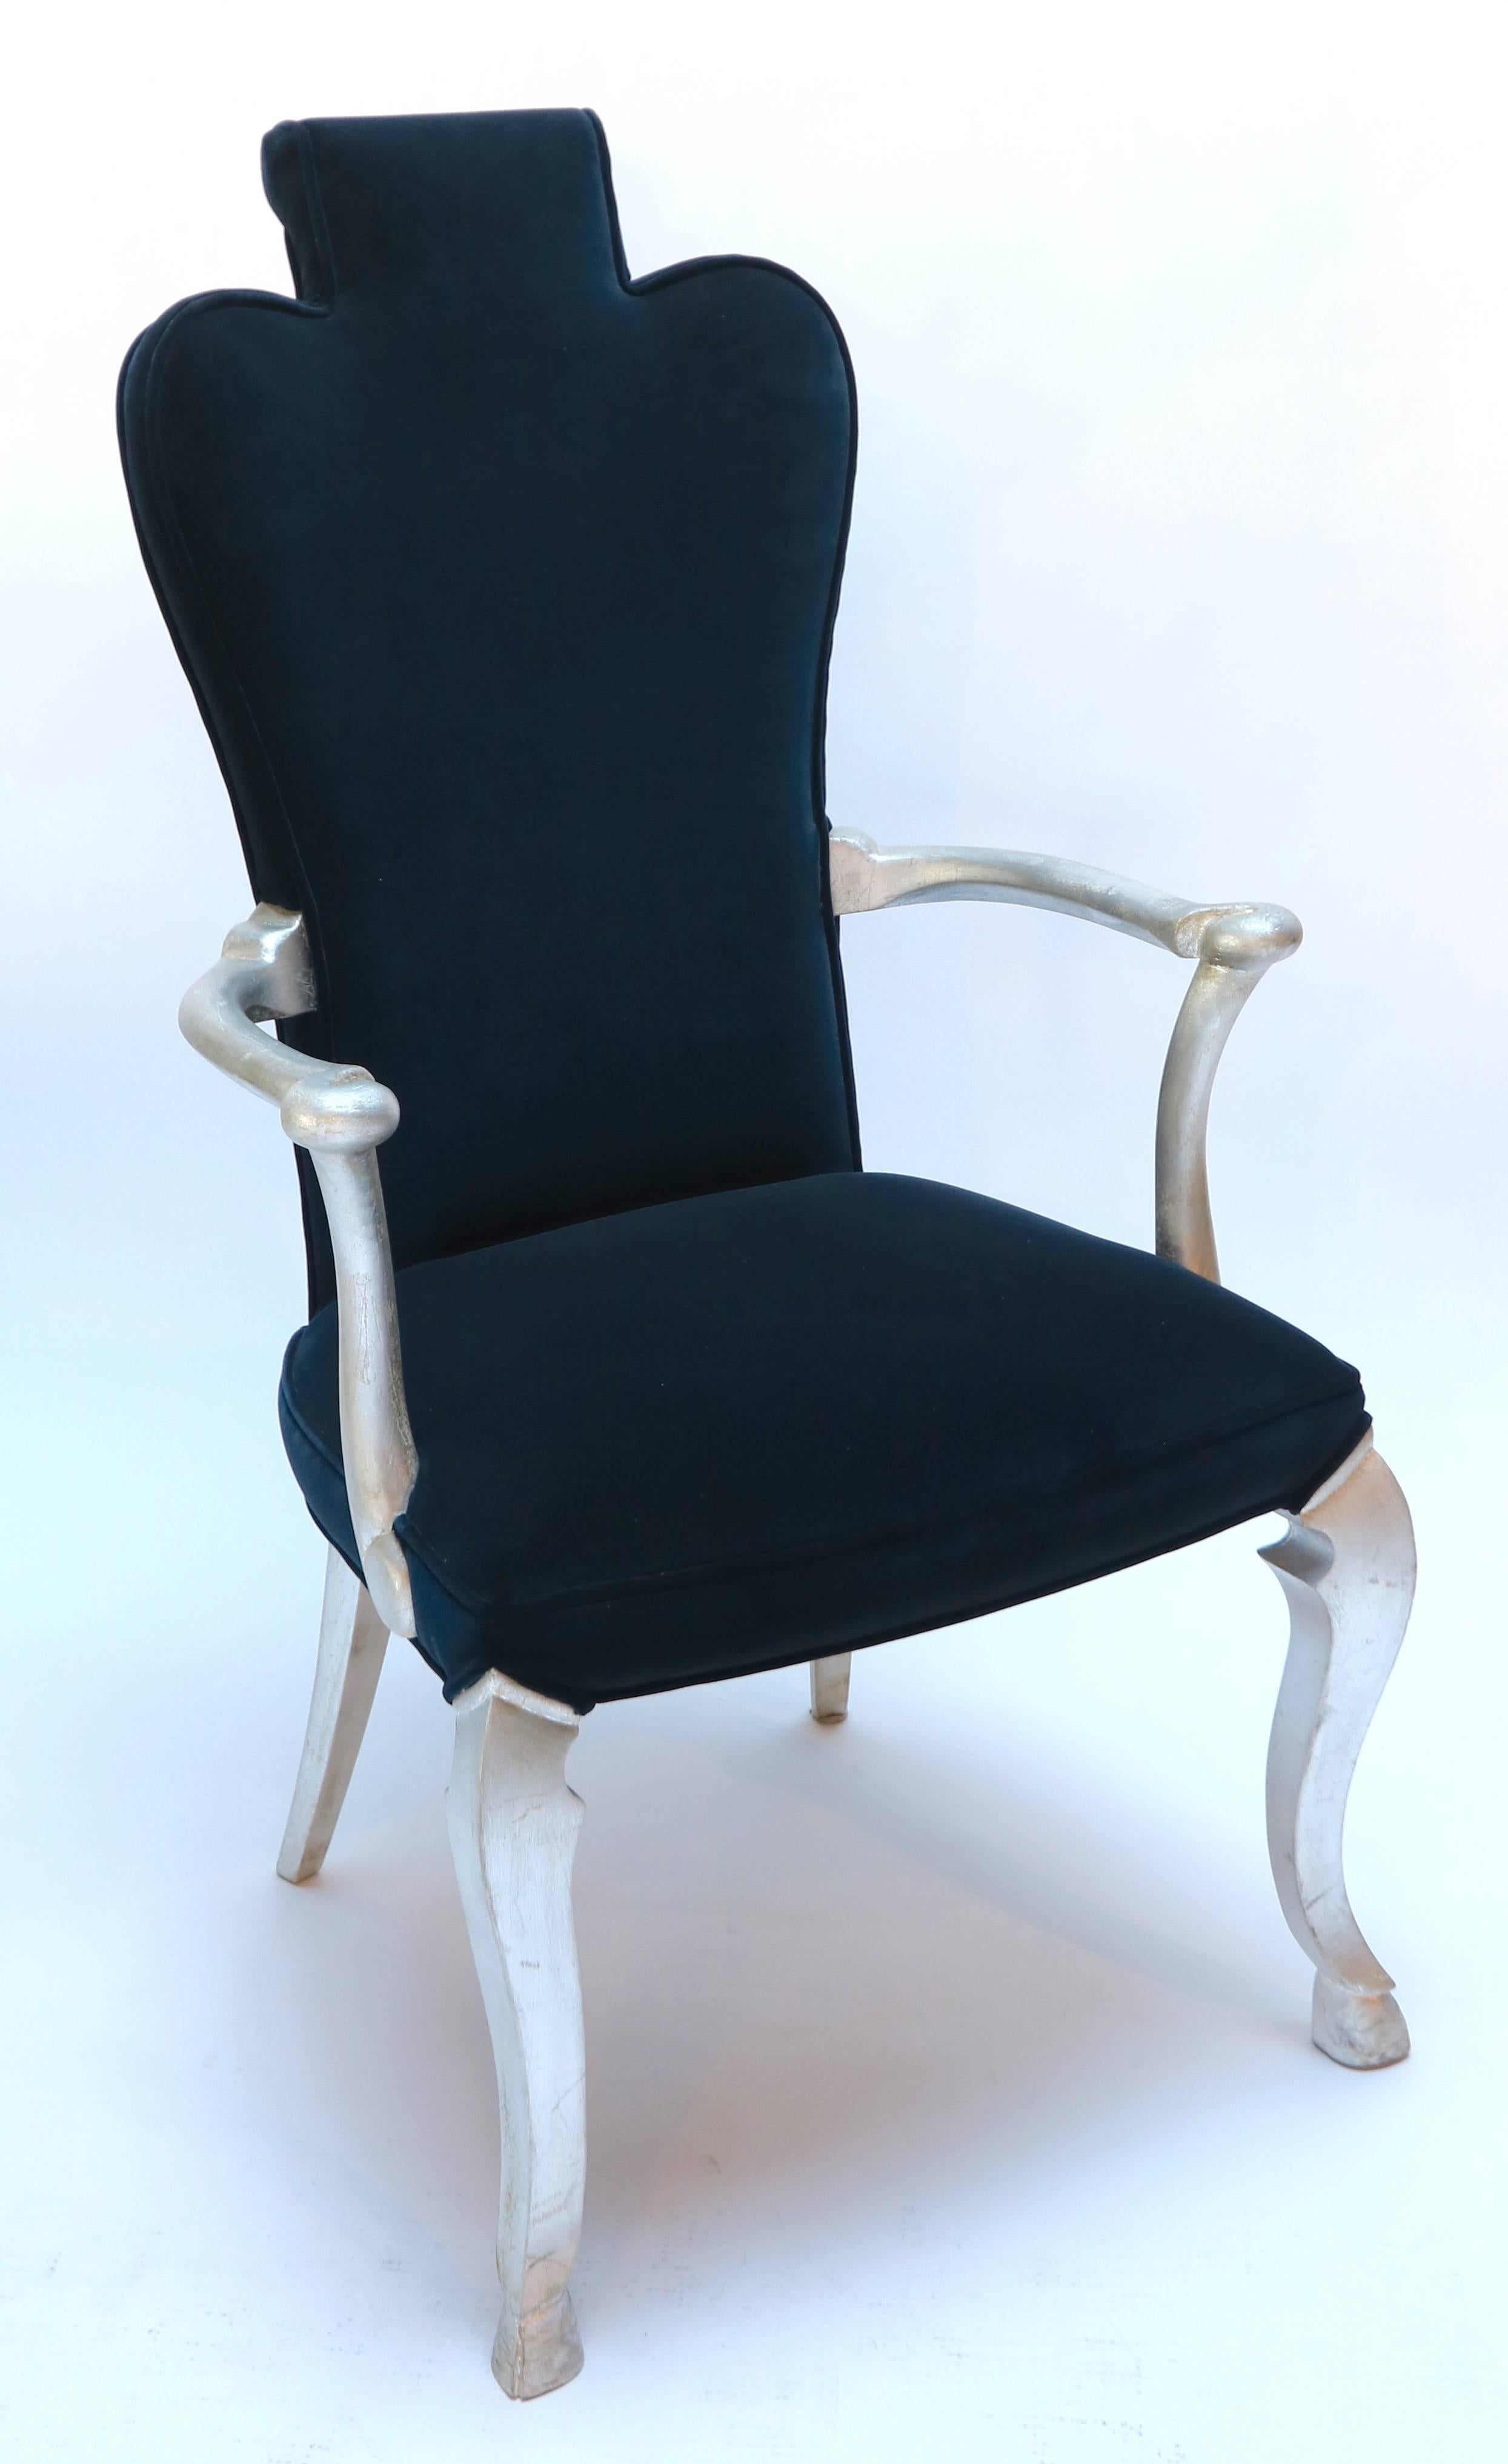 Zwei maßgefertigte Blattsilber-Sessel, bezogen mit mitternachtsblauem belgischem Samt von Adesso Imports.

Der Verkaufspreis gilt nur für das Bodenmodell.